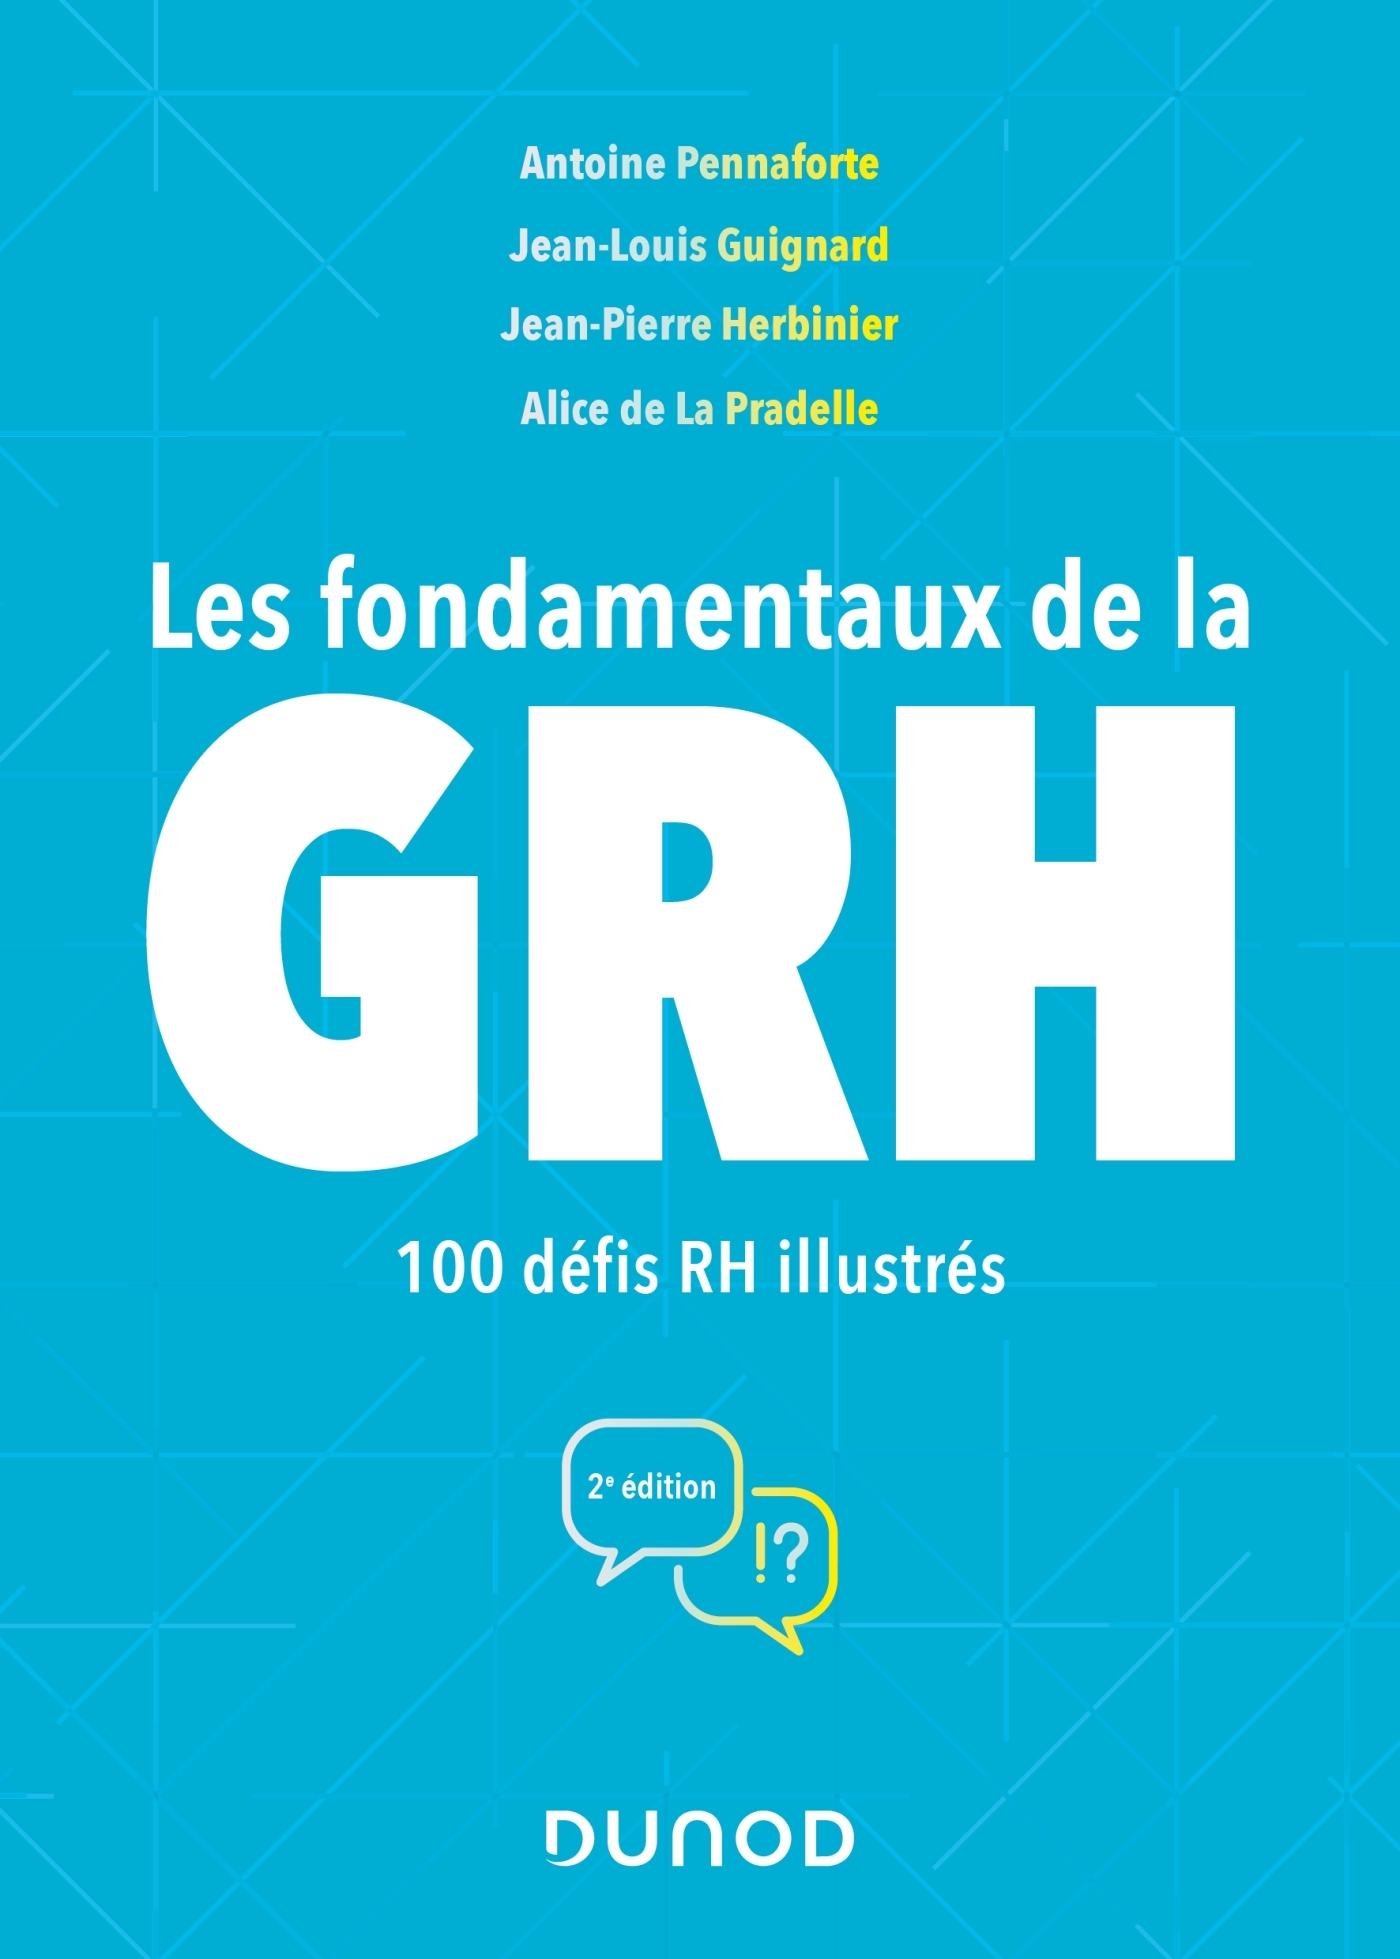 Les Mots De La Grh Exploration Cnam Les fondamentaux de la GRH - 100 défis RH illustrés - Livre et ebook  Ressources humaines de Antoine Pennaforte - Dunod